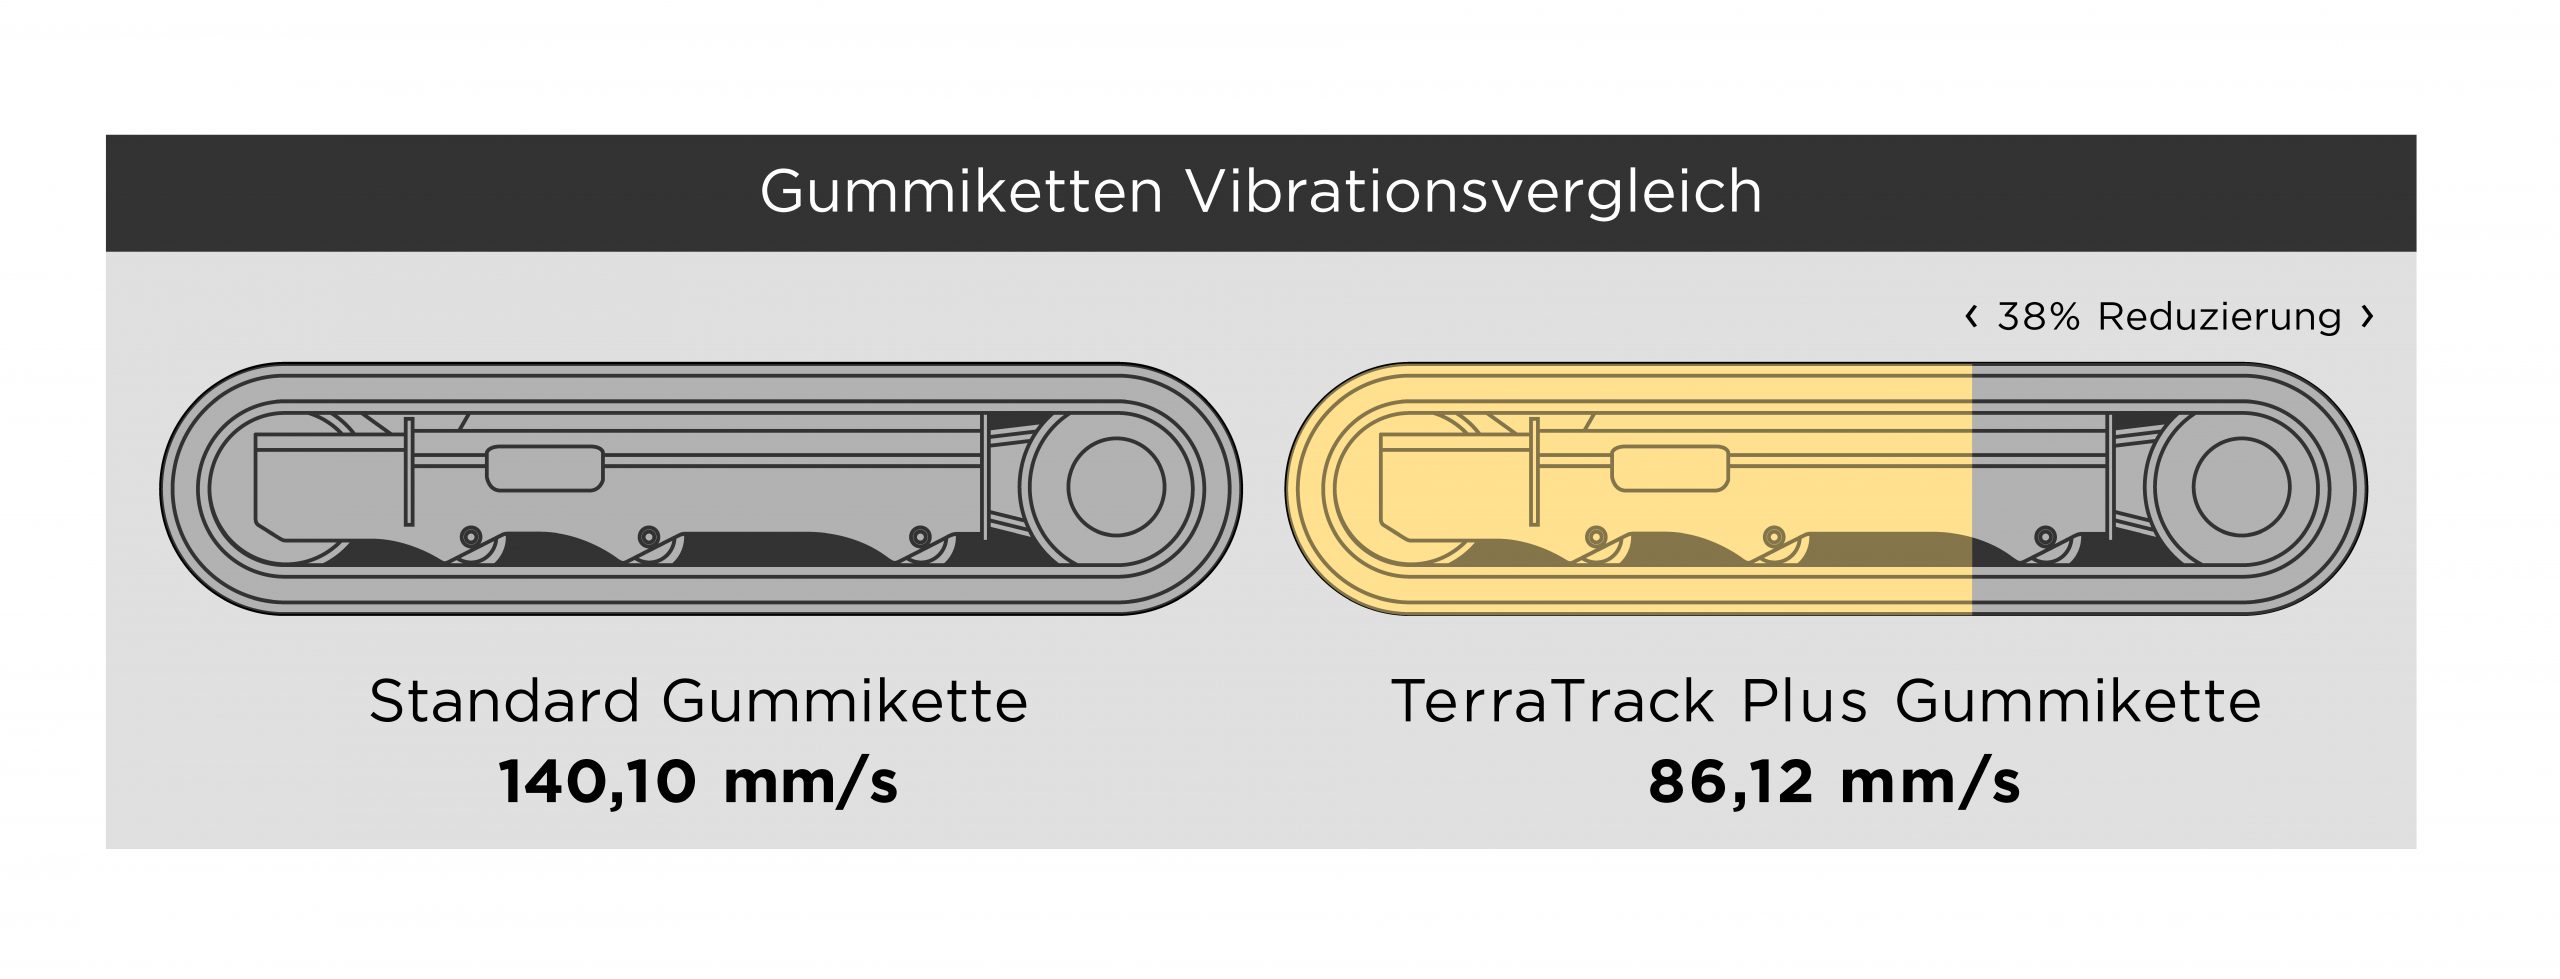 Die einzigartigen Anti-Vibrations-Eigenschaften des TerraTrack Plus Gummiketten-Systems von Astrak sorgen für einen ruhigeren Lauf des gesamten Laufwerks und bieten erhöhten Bedienerkomfort.